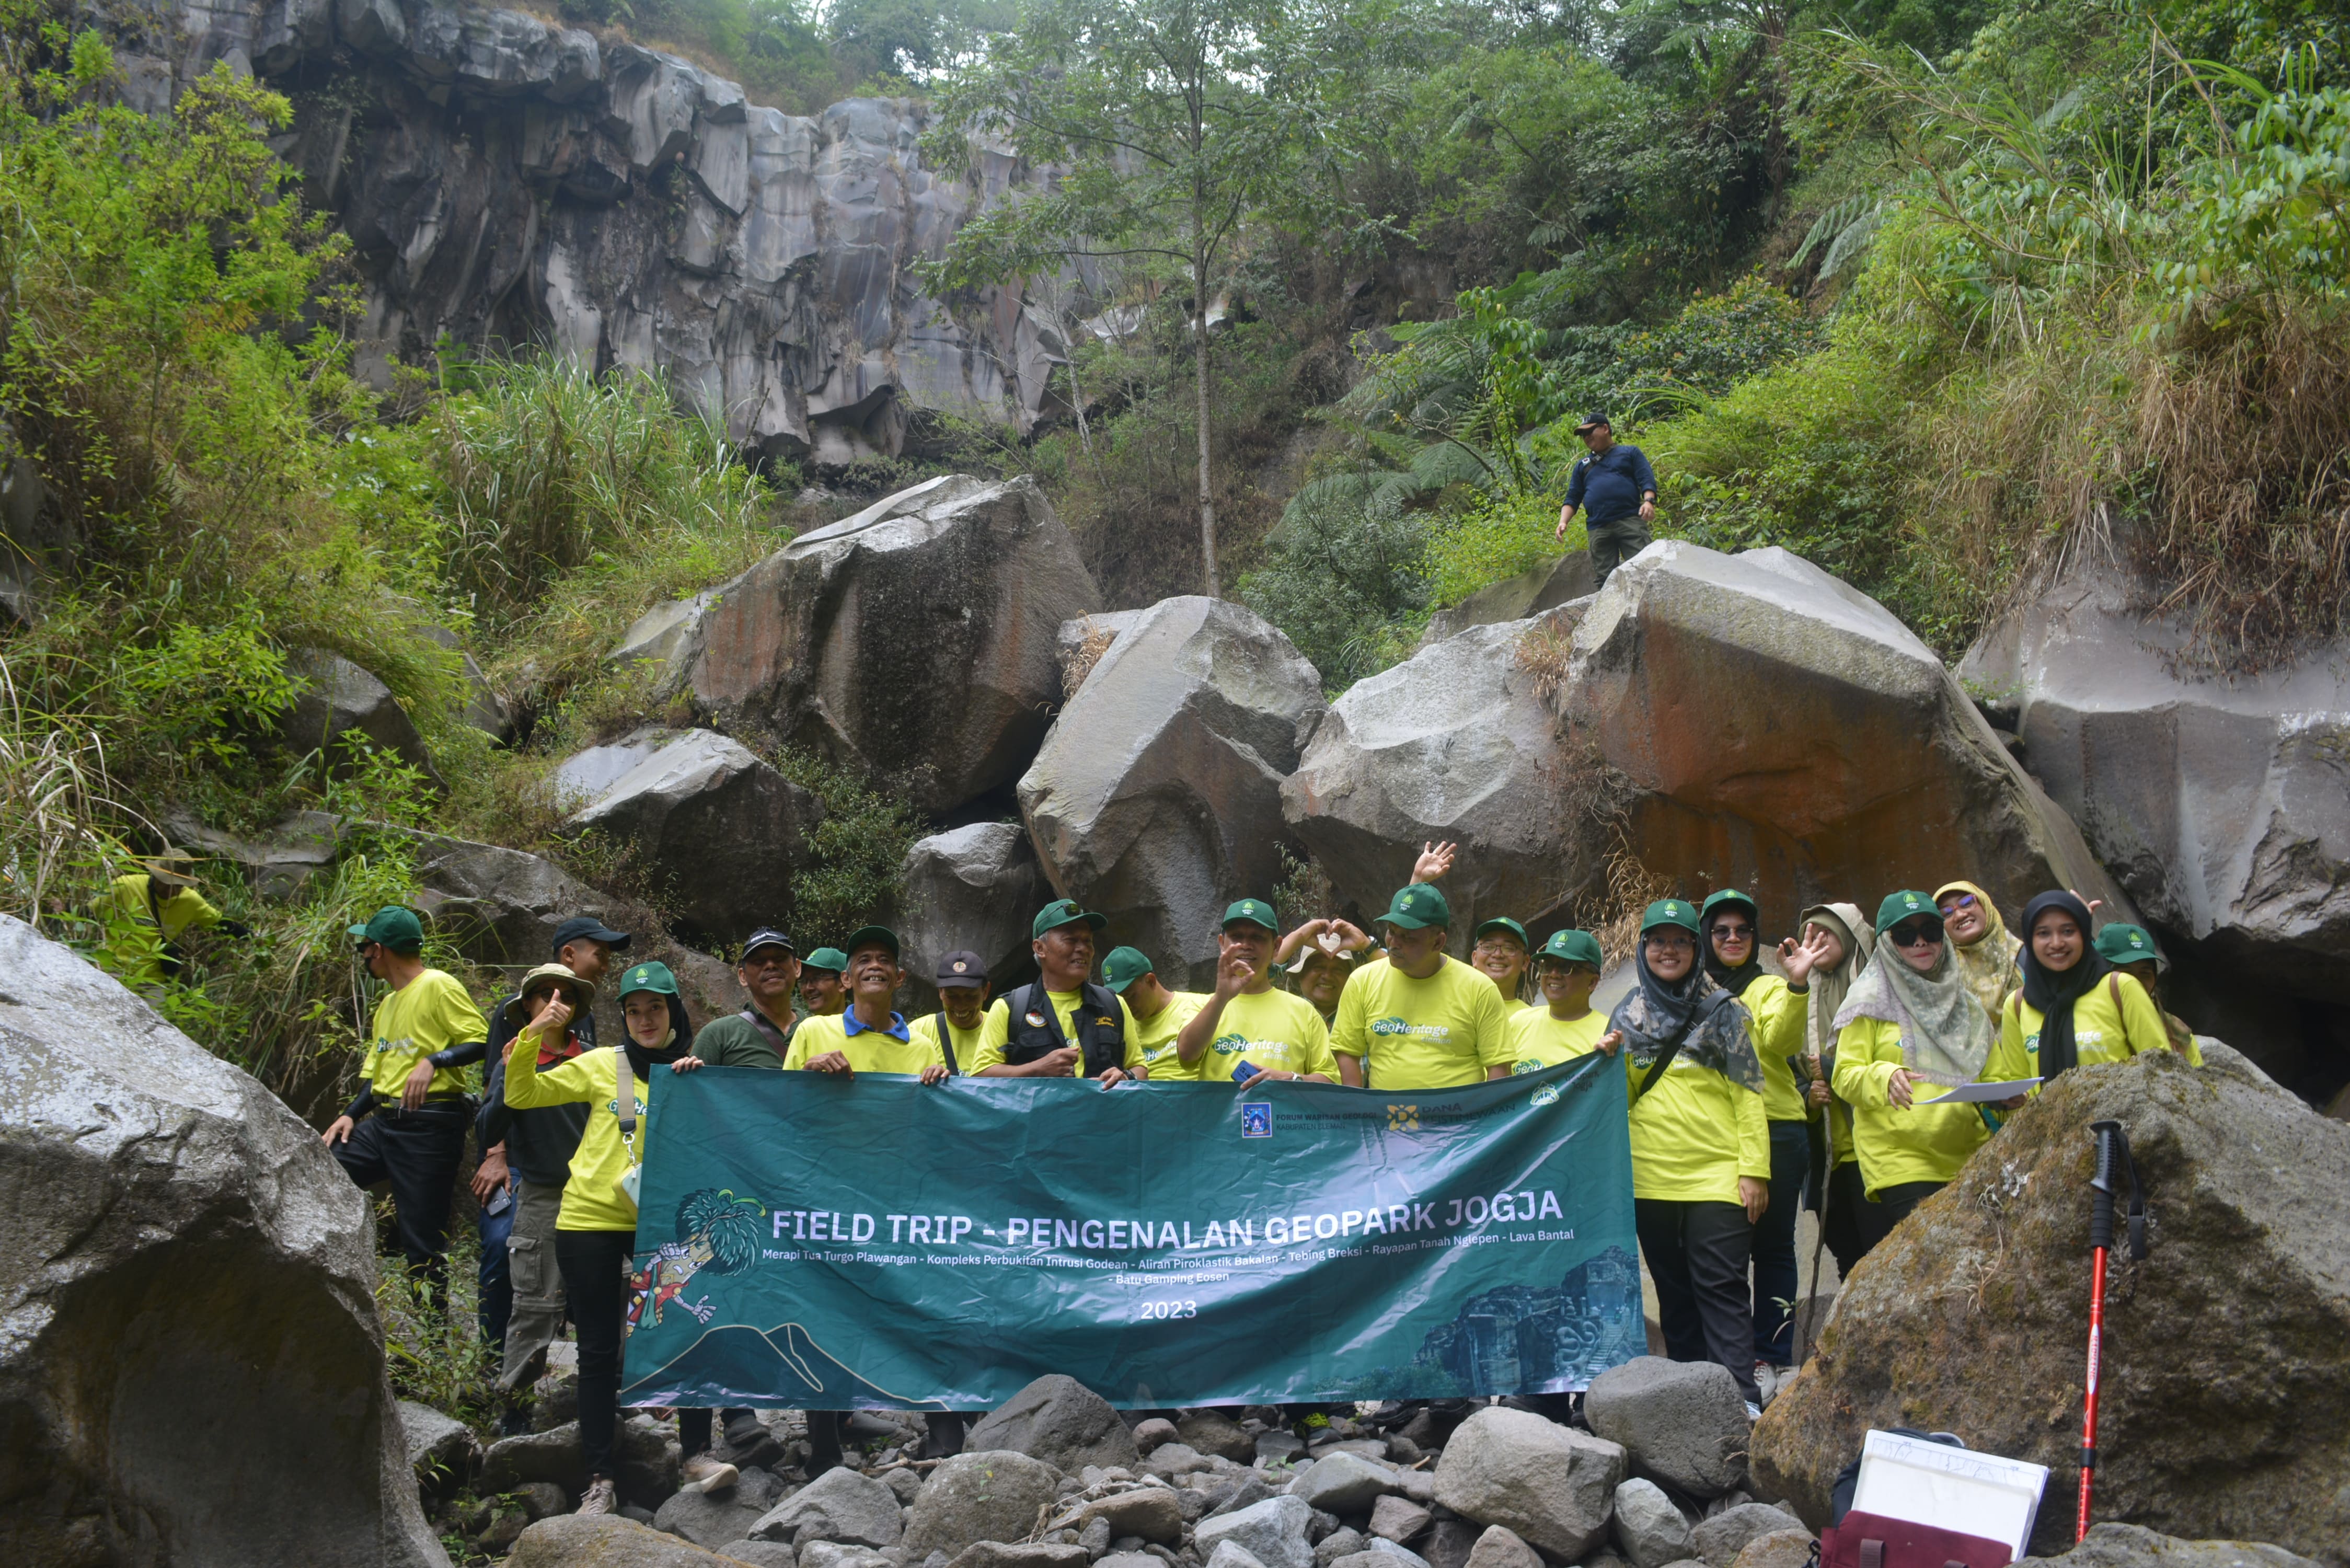 Field Trip Pengenalan Geopark Jogja di Kabupaten Sleman “Menyibak Sejarah Merapi dari Turgo-Plawangan” image